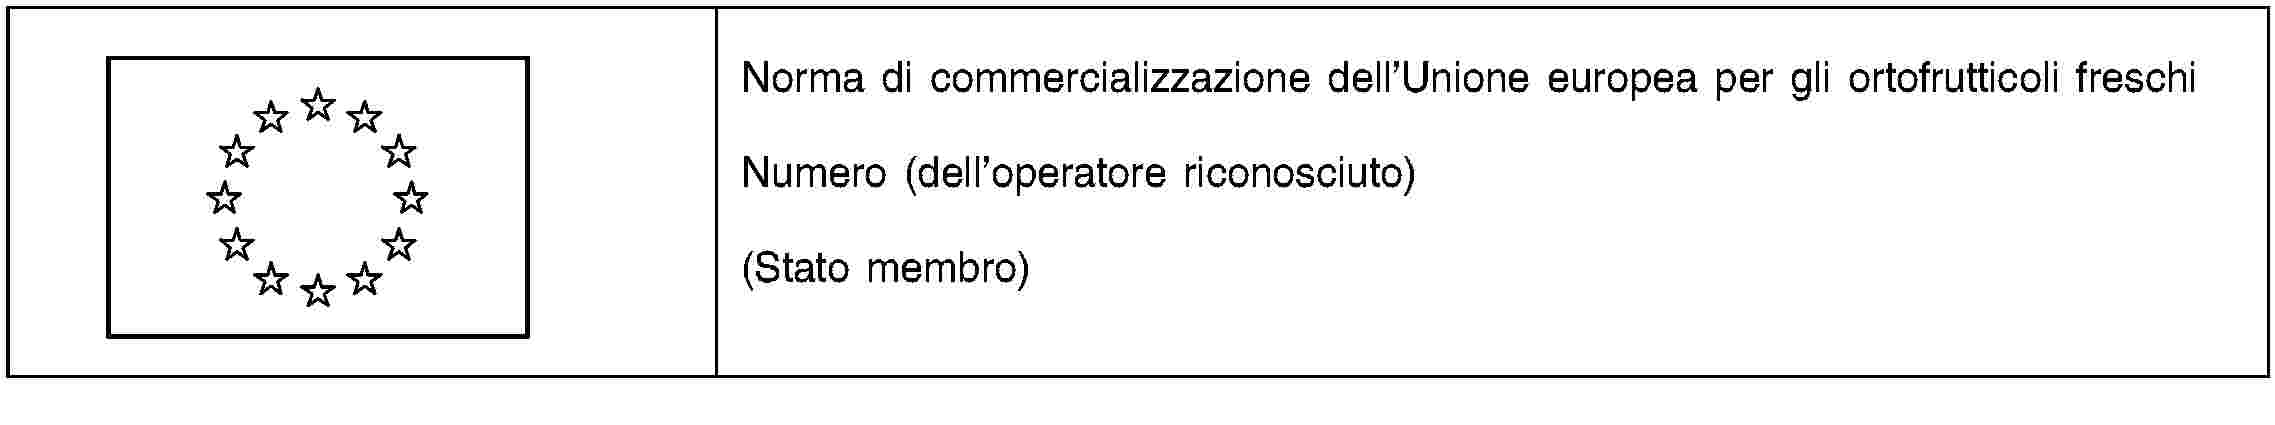 Norma di commercializzazione dell’Unione europea per gli ortofrutticoli freschiNumero (dell’operatore riconosciuto)(Stato membro)